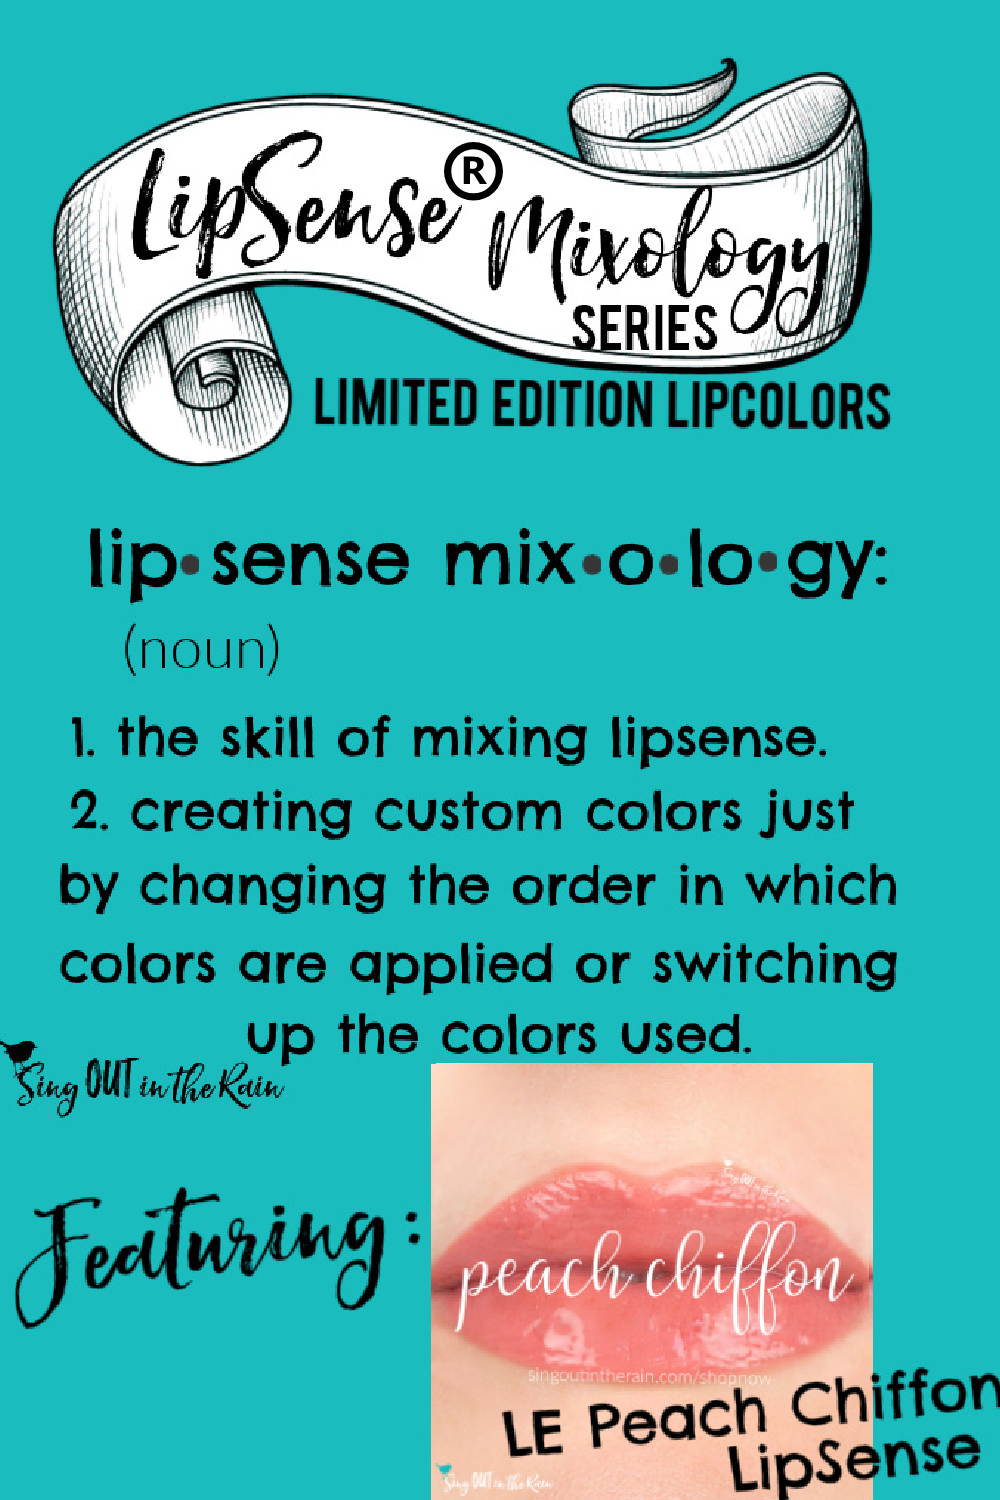 The Ultimate Guide to Peach Chiffon LipSense Mixology